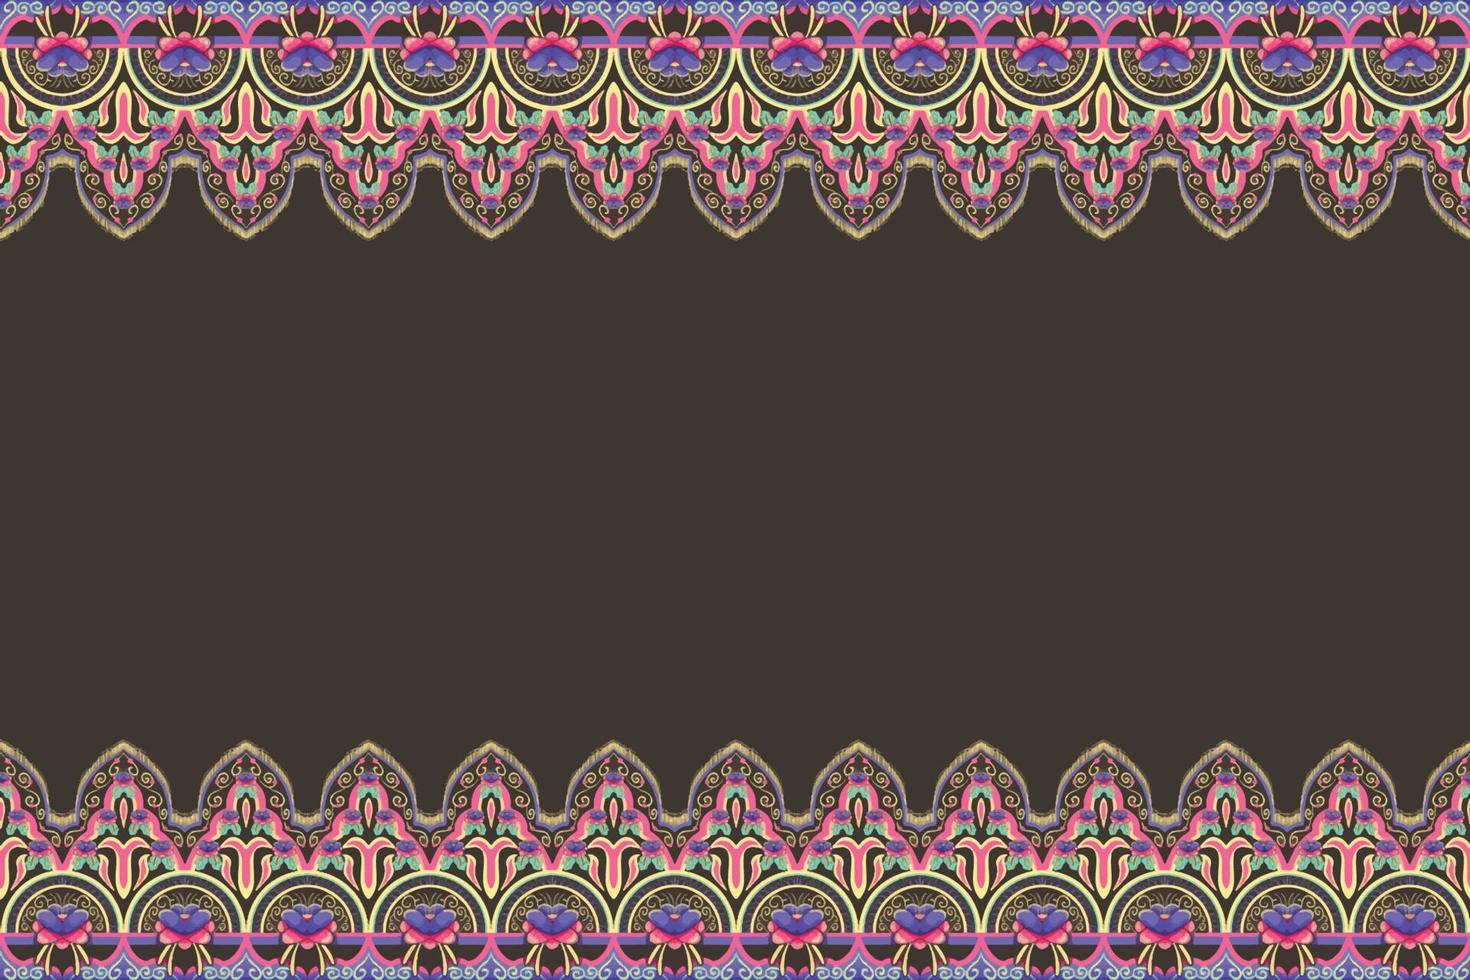 rosa, lila, grüne, gelbe blume auf braun. geometrisches ethnisches orientalisches Muster traditionelles Design für Hintergrund, Teppich, Tapete, Kleidung, Verpackung, Batik, Stoff, Vektorillustrationsstickereiart vektor